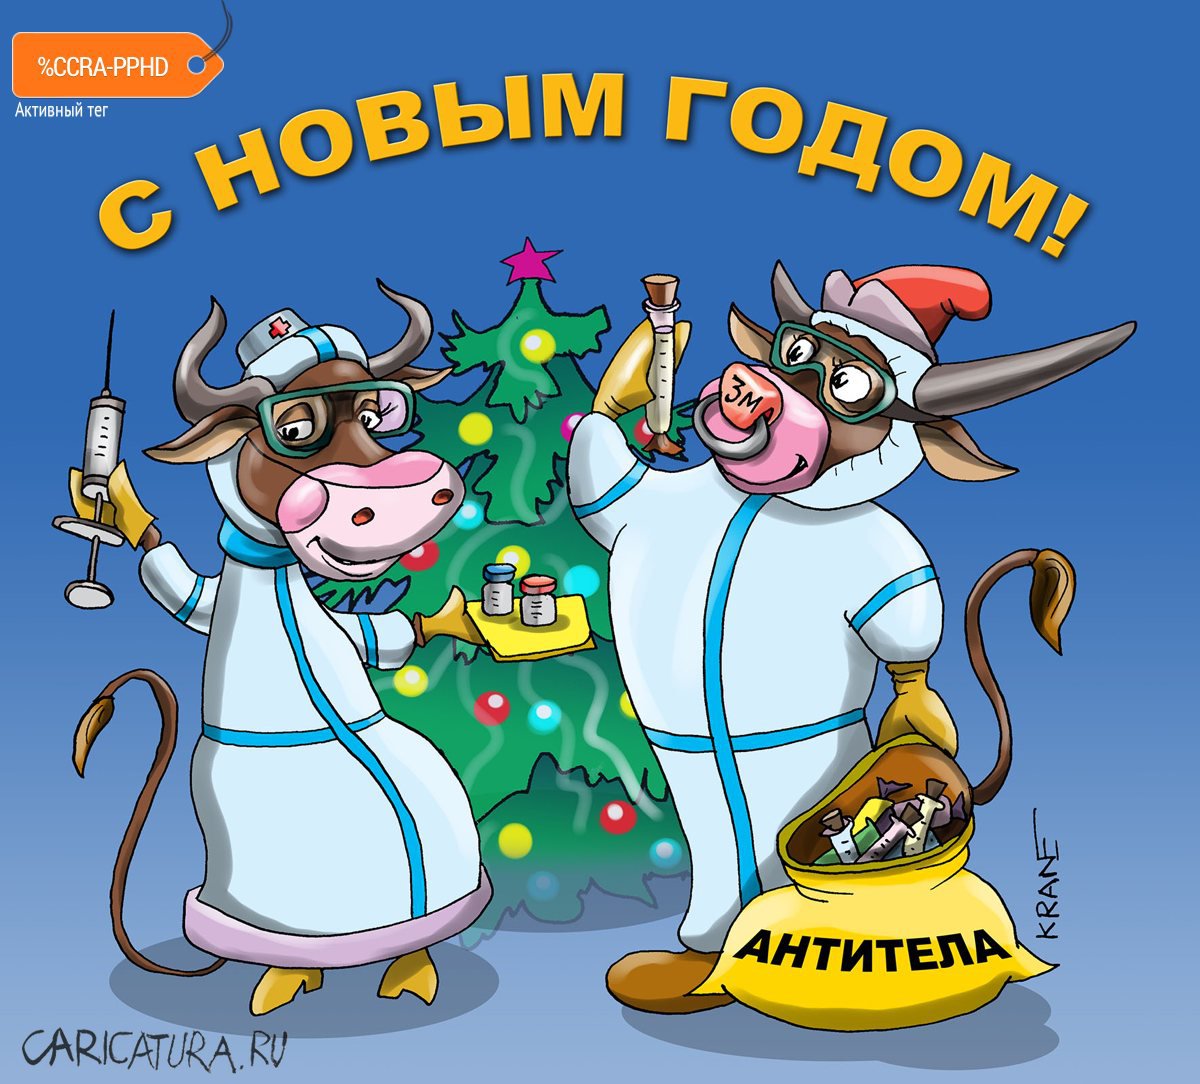 Карикатура "Желанные подарки на Новый год", Евгений Кран